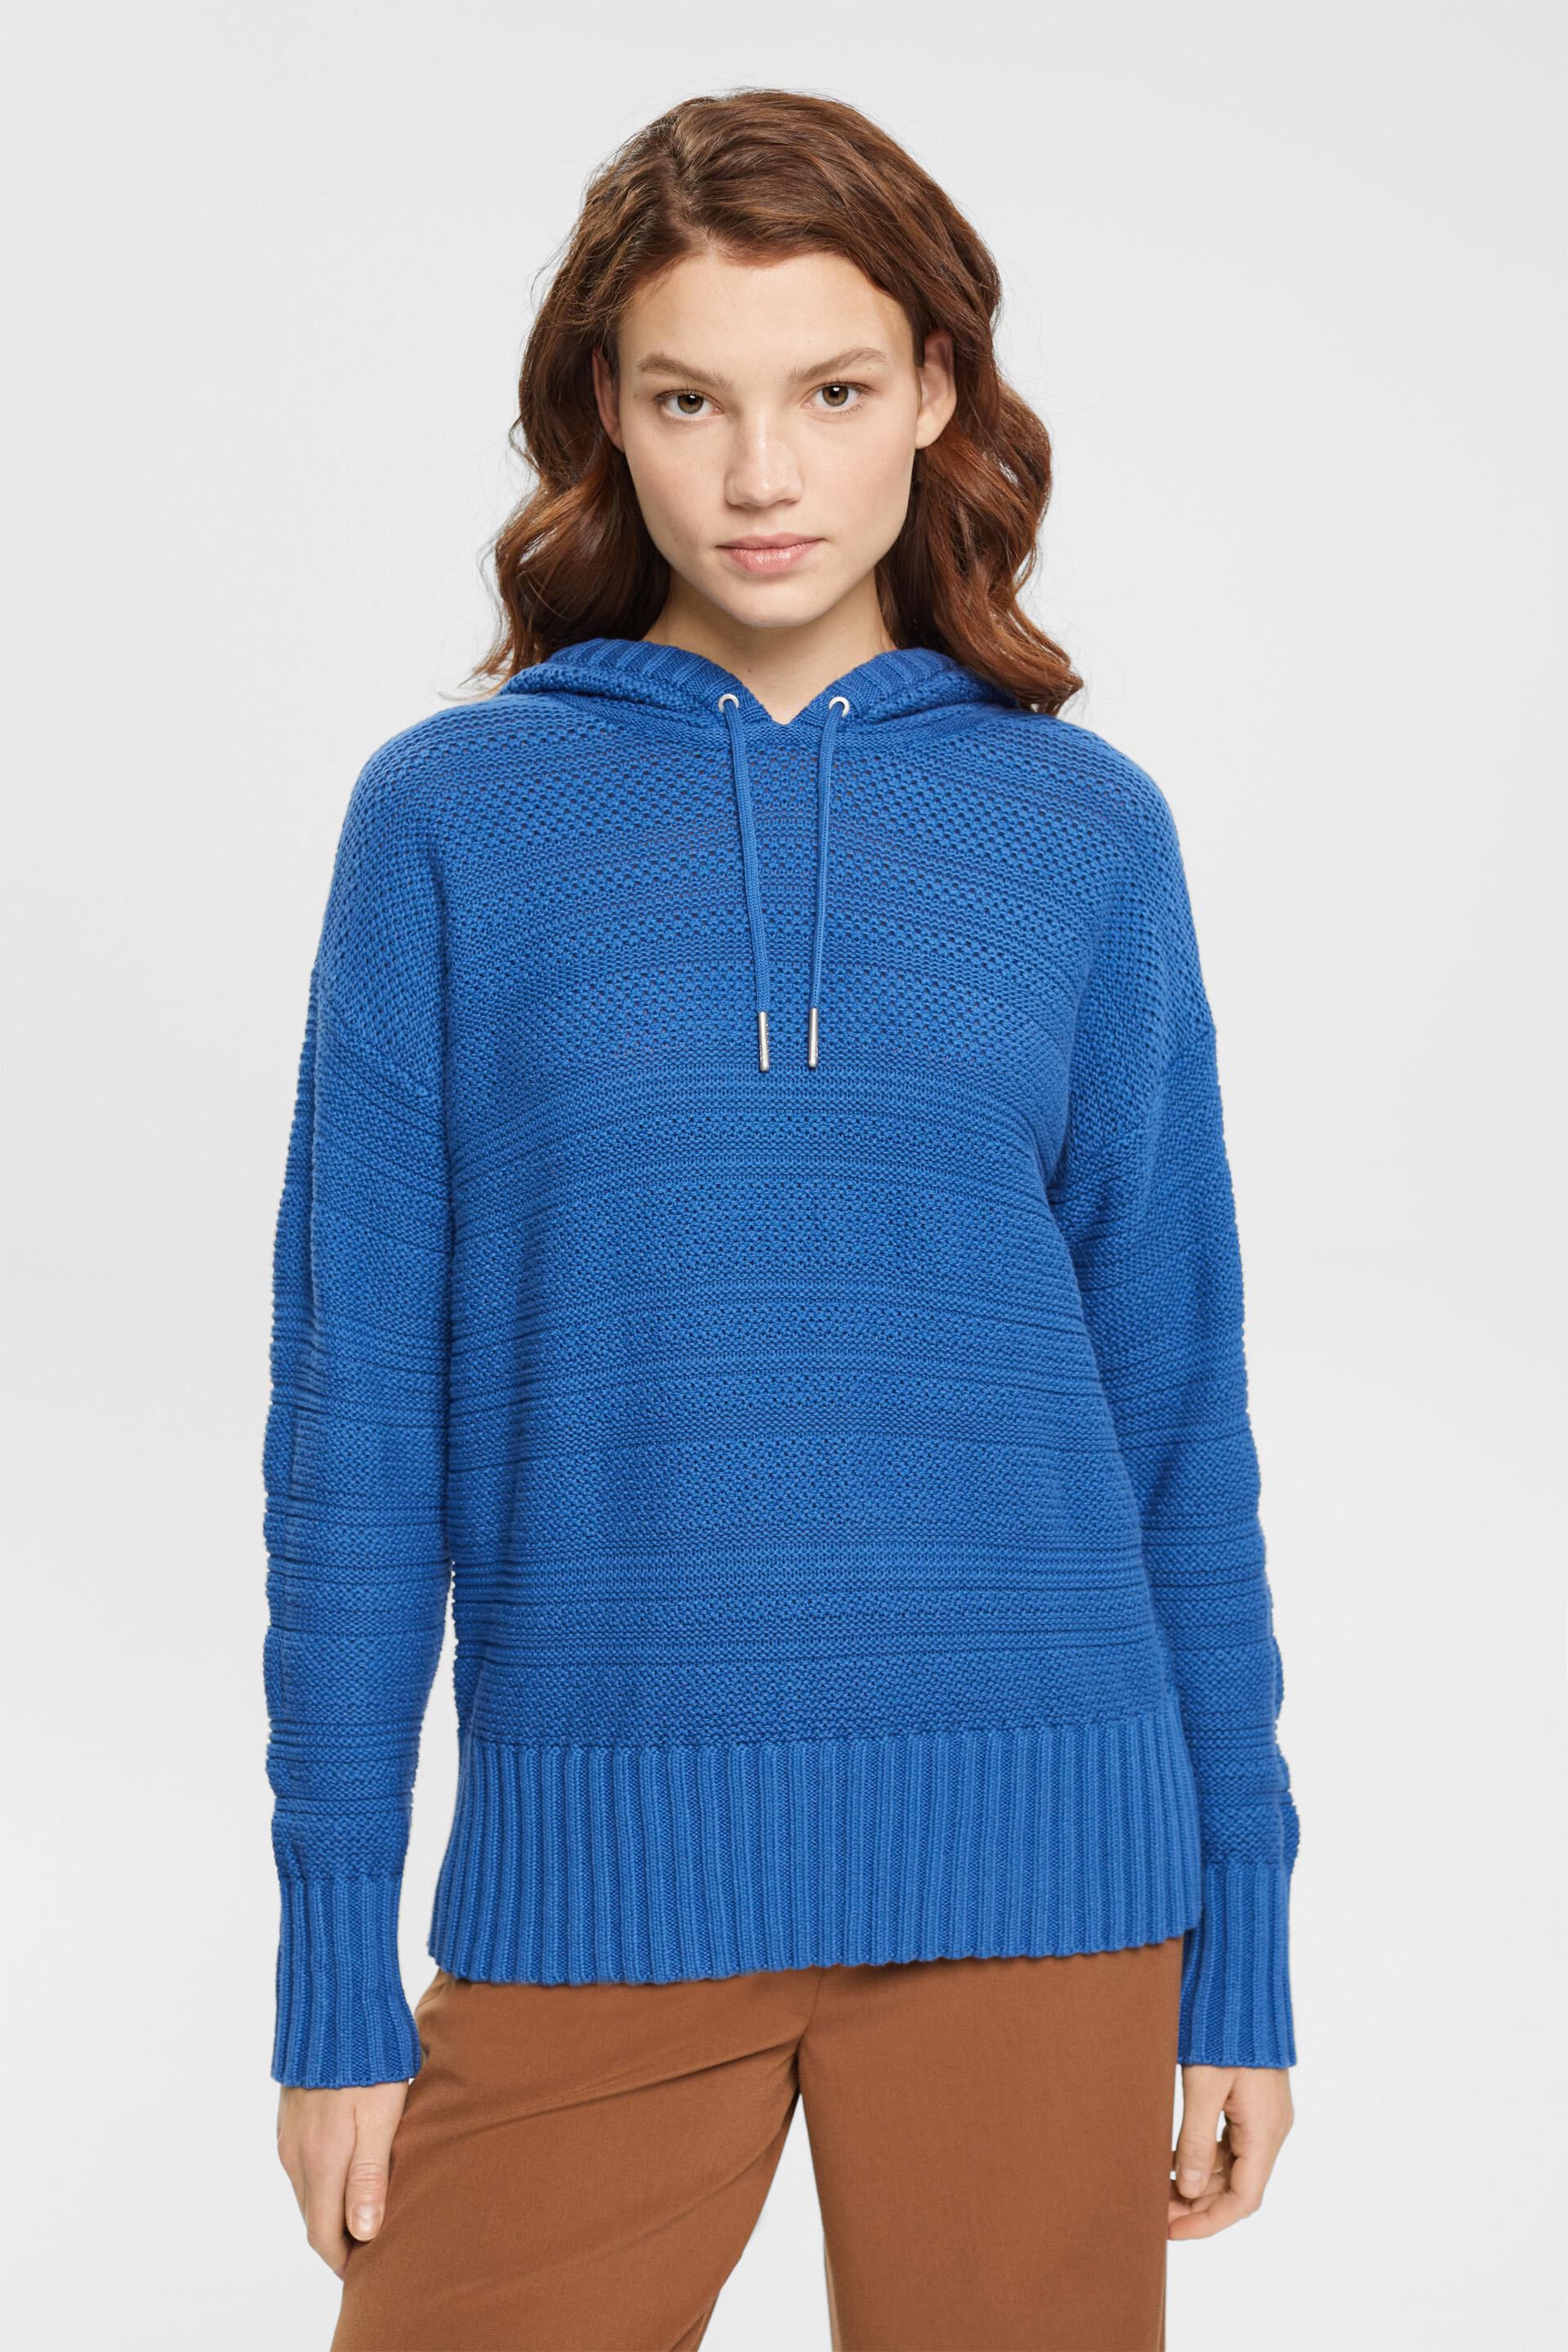 Femme Vêtements Sweats et pull overs Pulls sans manches 081EE1I319 Sweater Esprit en coloris Marron 36 % de réduction 